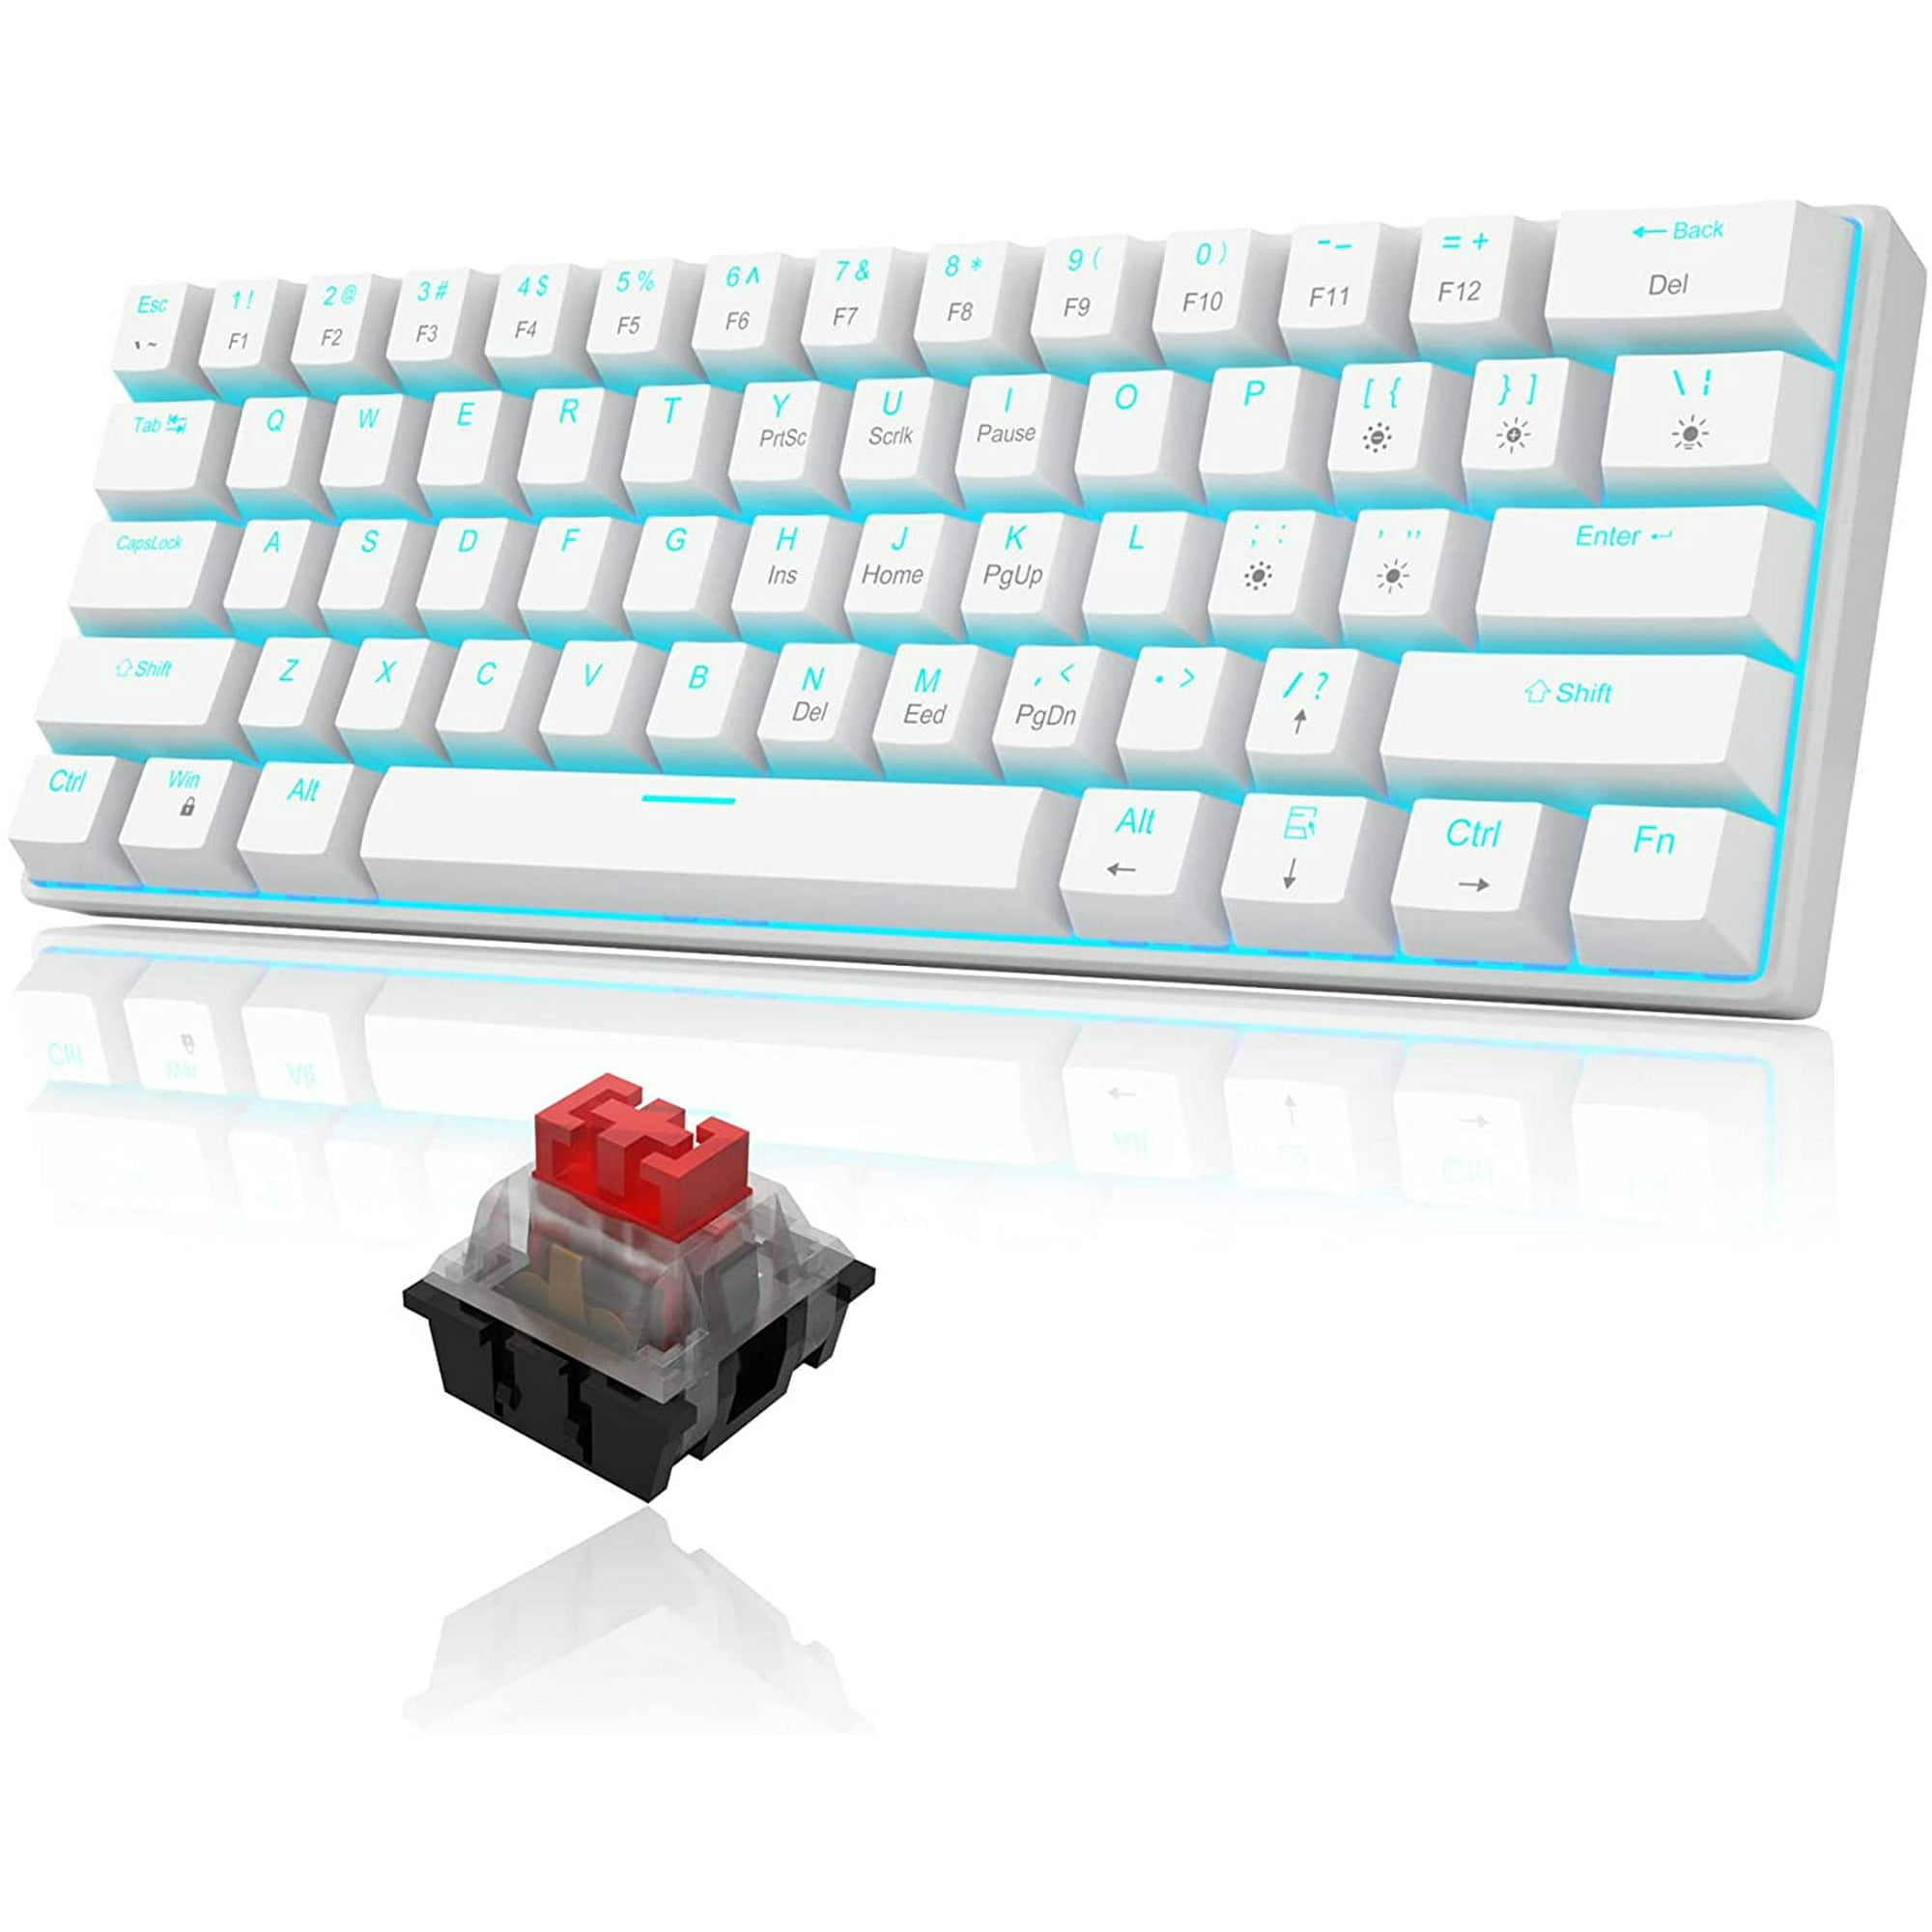 Teclado 60% para juegos con cable, mini teclado compacto retroiluminado RGB  con soporte para teléfono, teclado de máquina de escribir pequeño